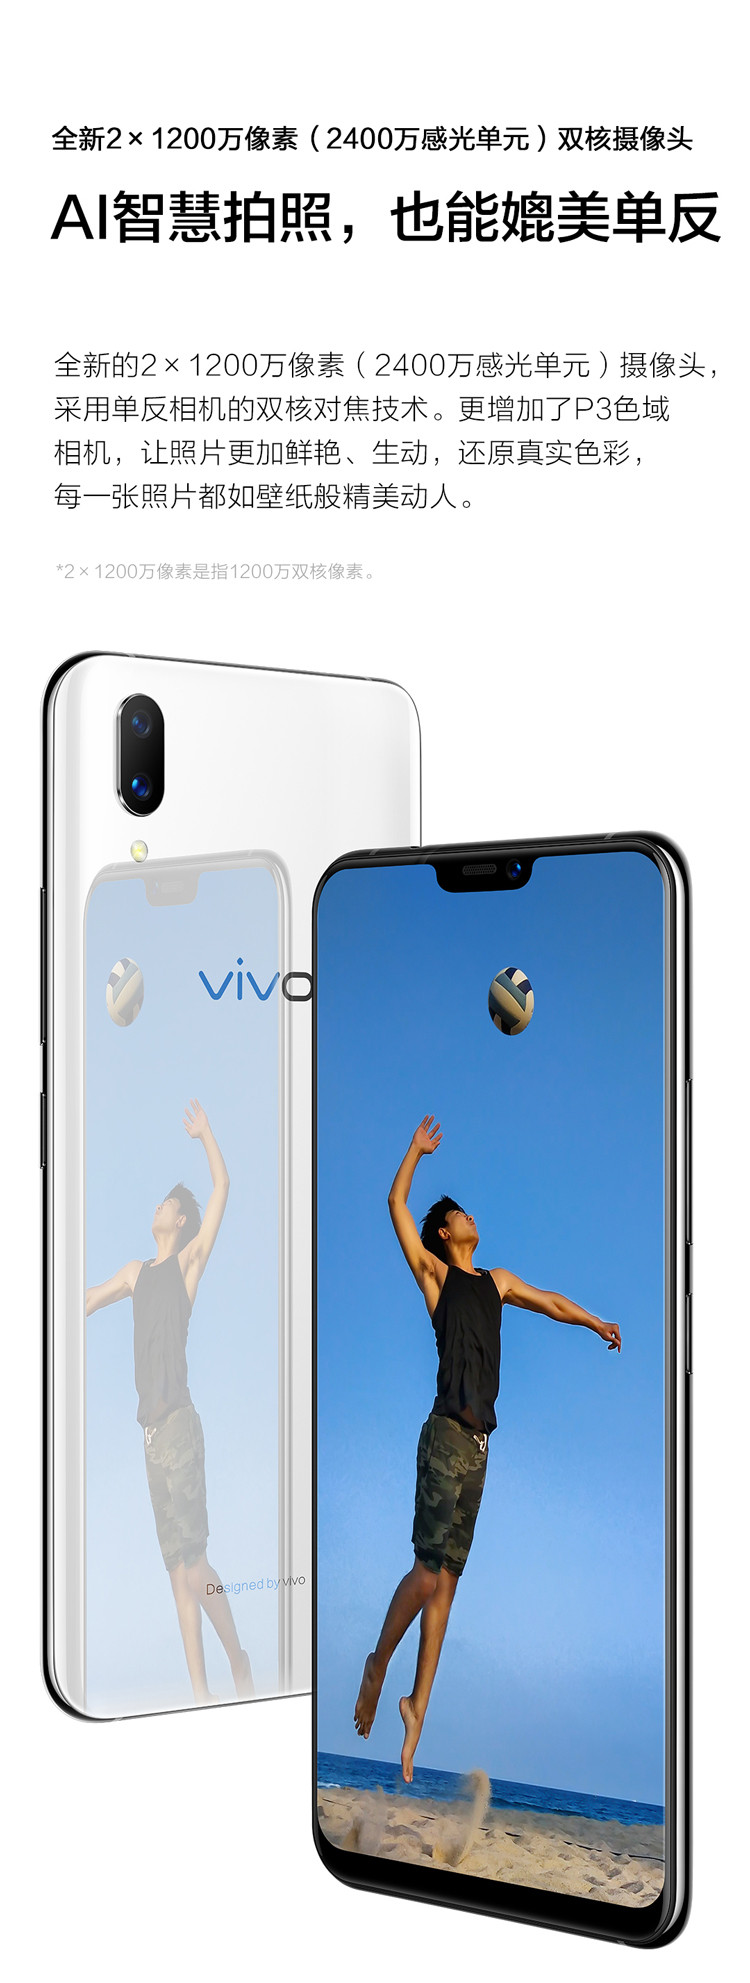 【湖南馆】VIVO X21 屏幕指纹版 双摄拍照游戏手机 6GB+128GB 全网通